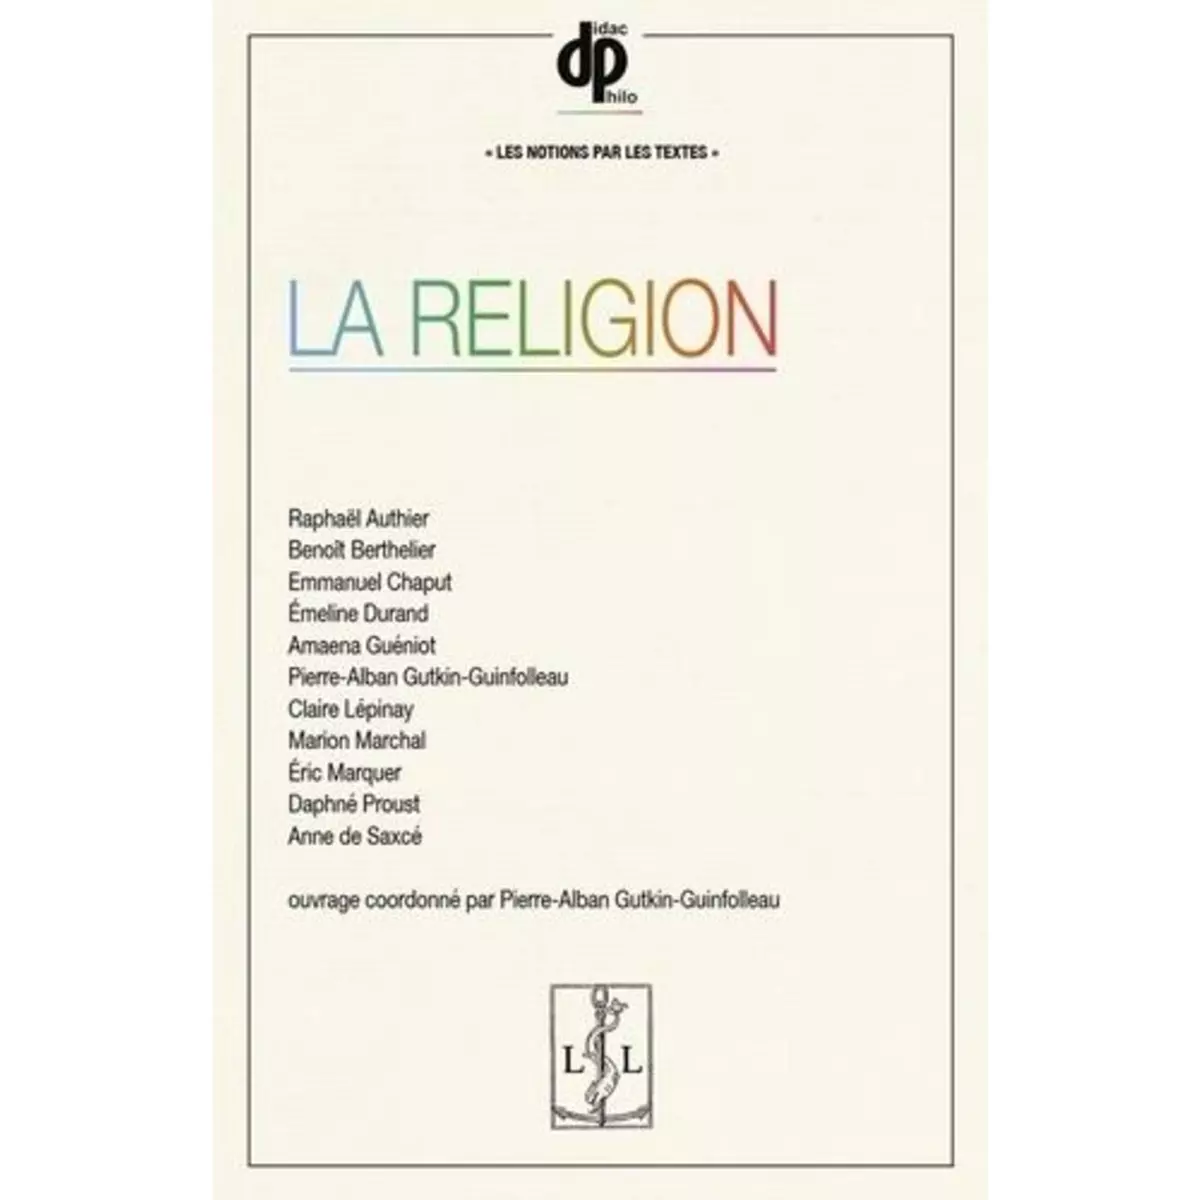  LA RELIGION, Gutkin-Guinfolleau Pierre-Alban